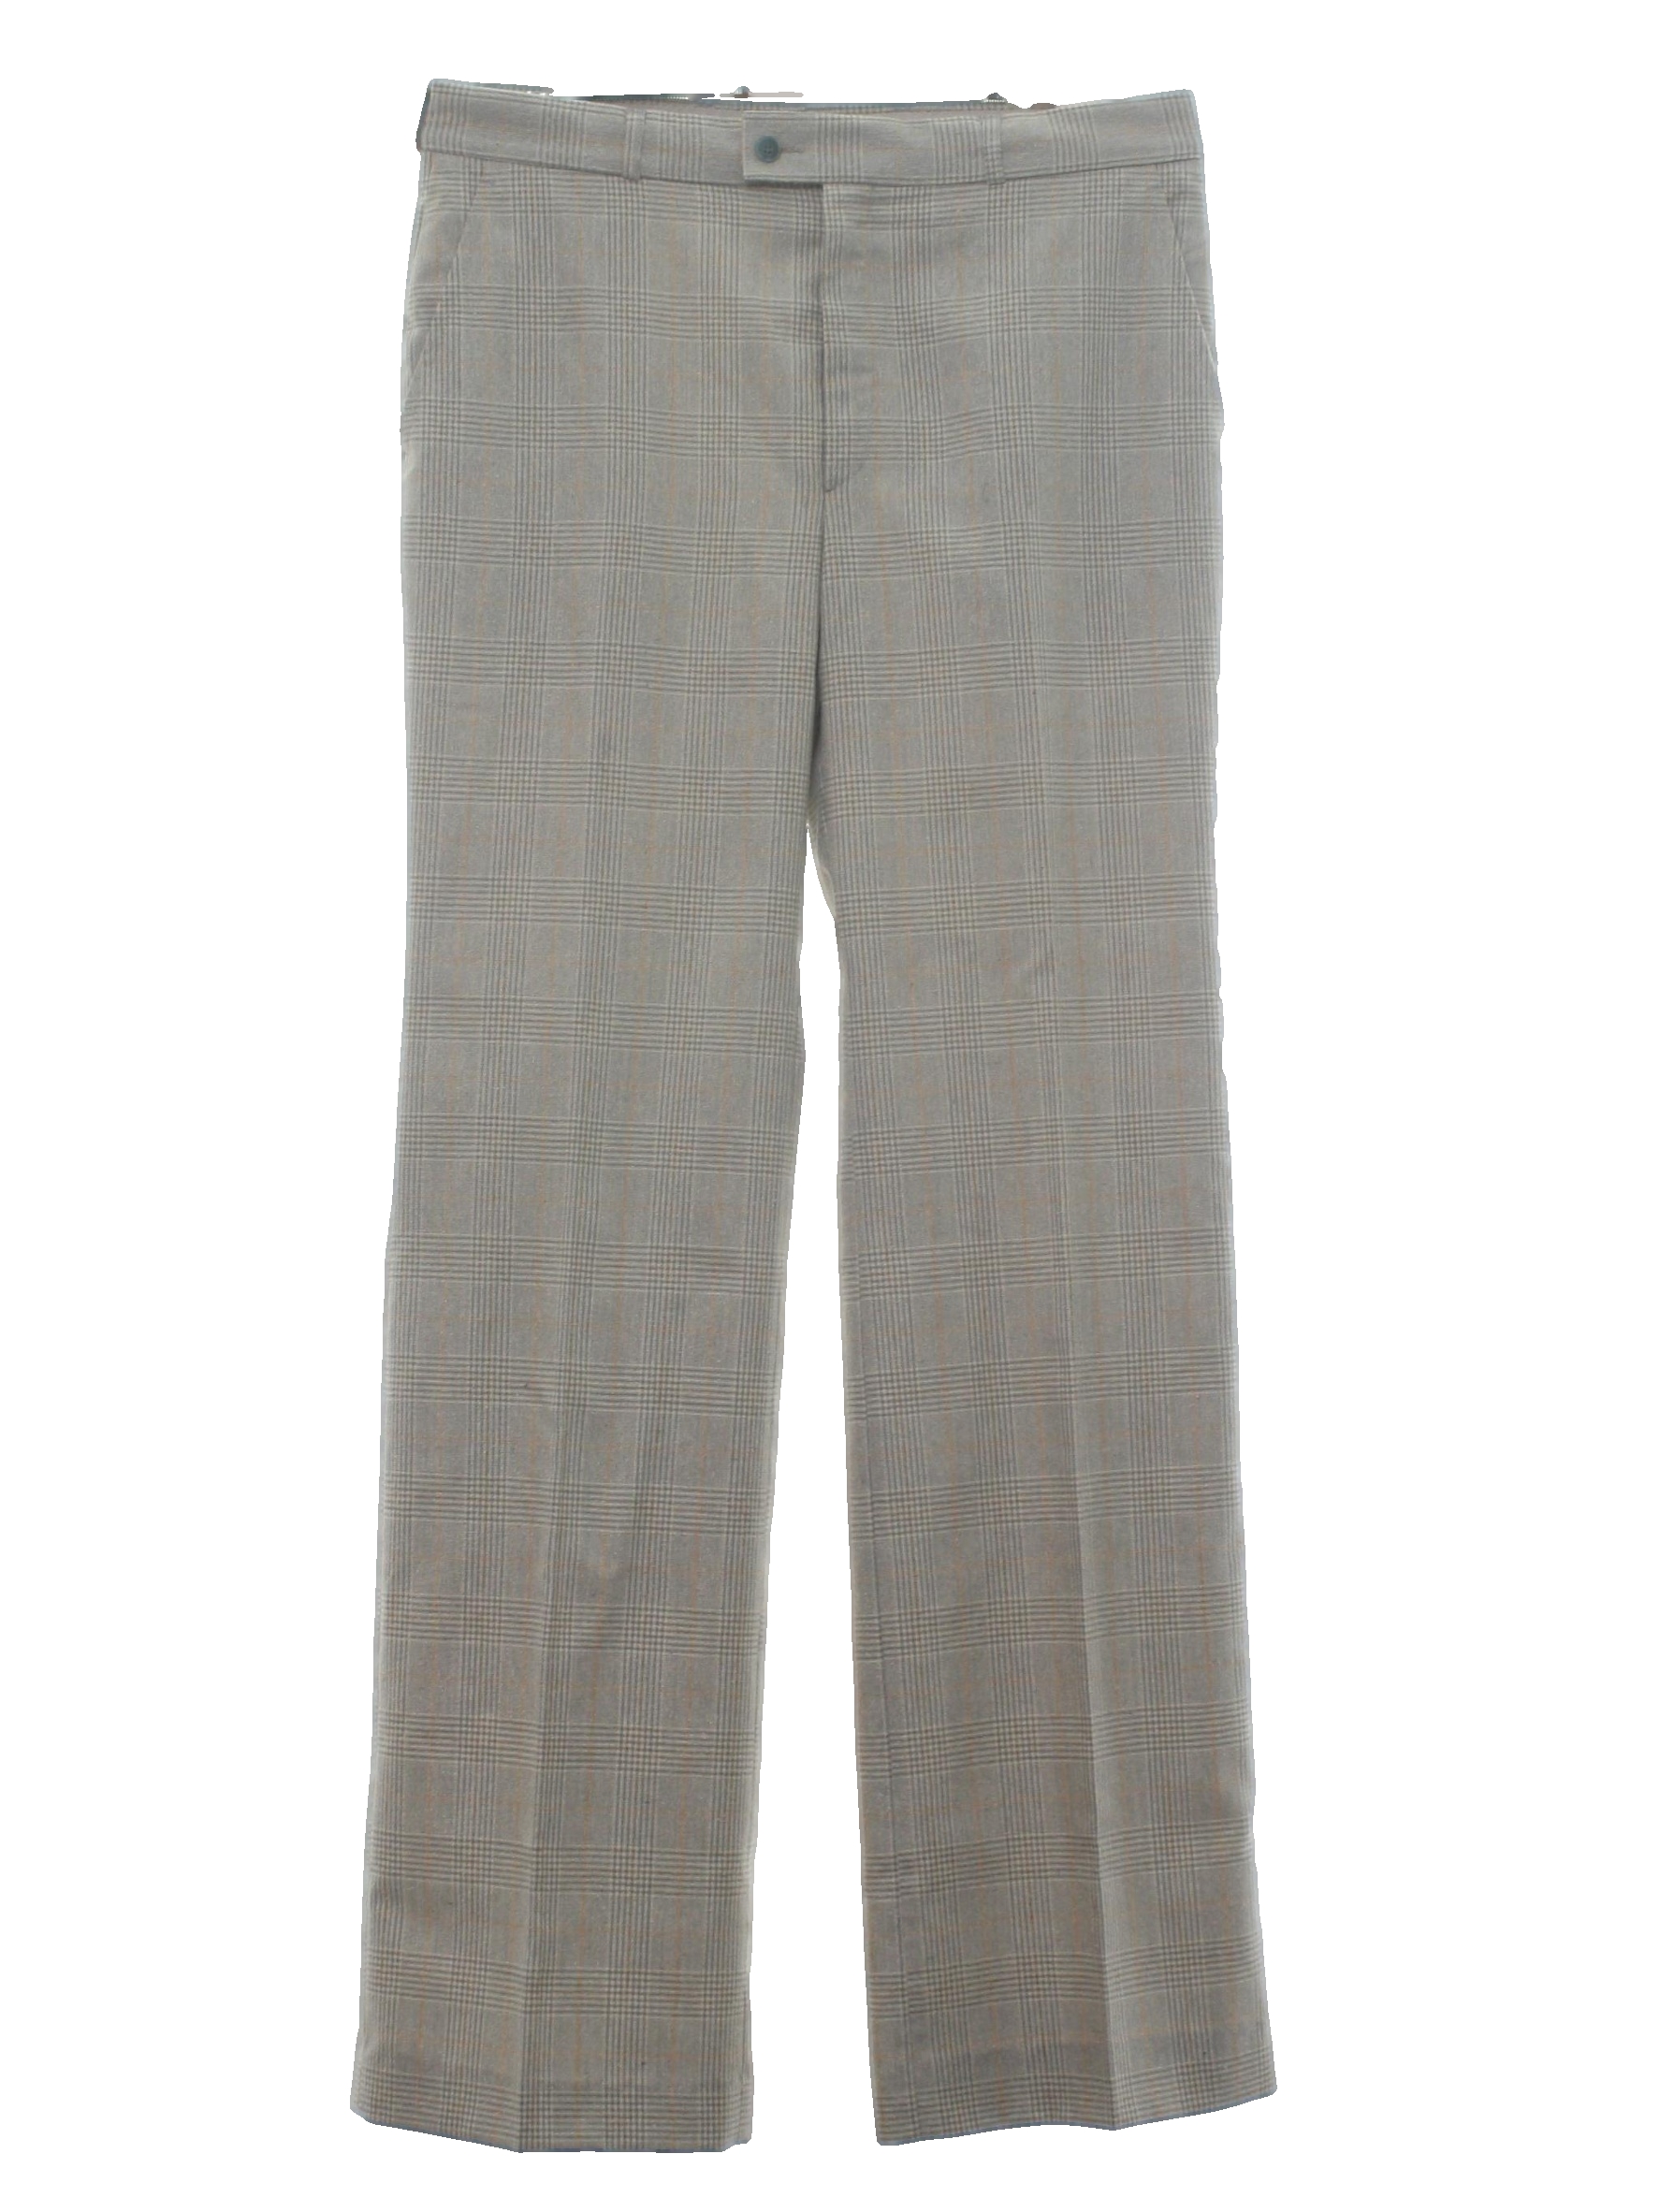 Yves Saint Laurent Eighties Vintage Pants: 80s -Yves Saint Laurent ...